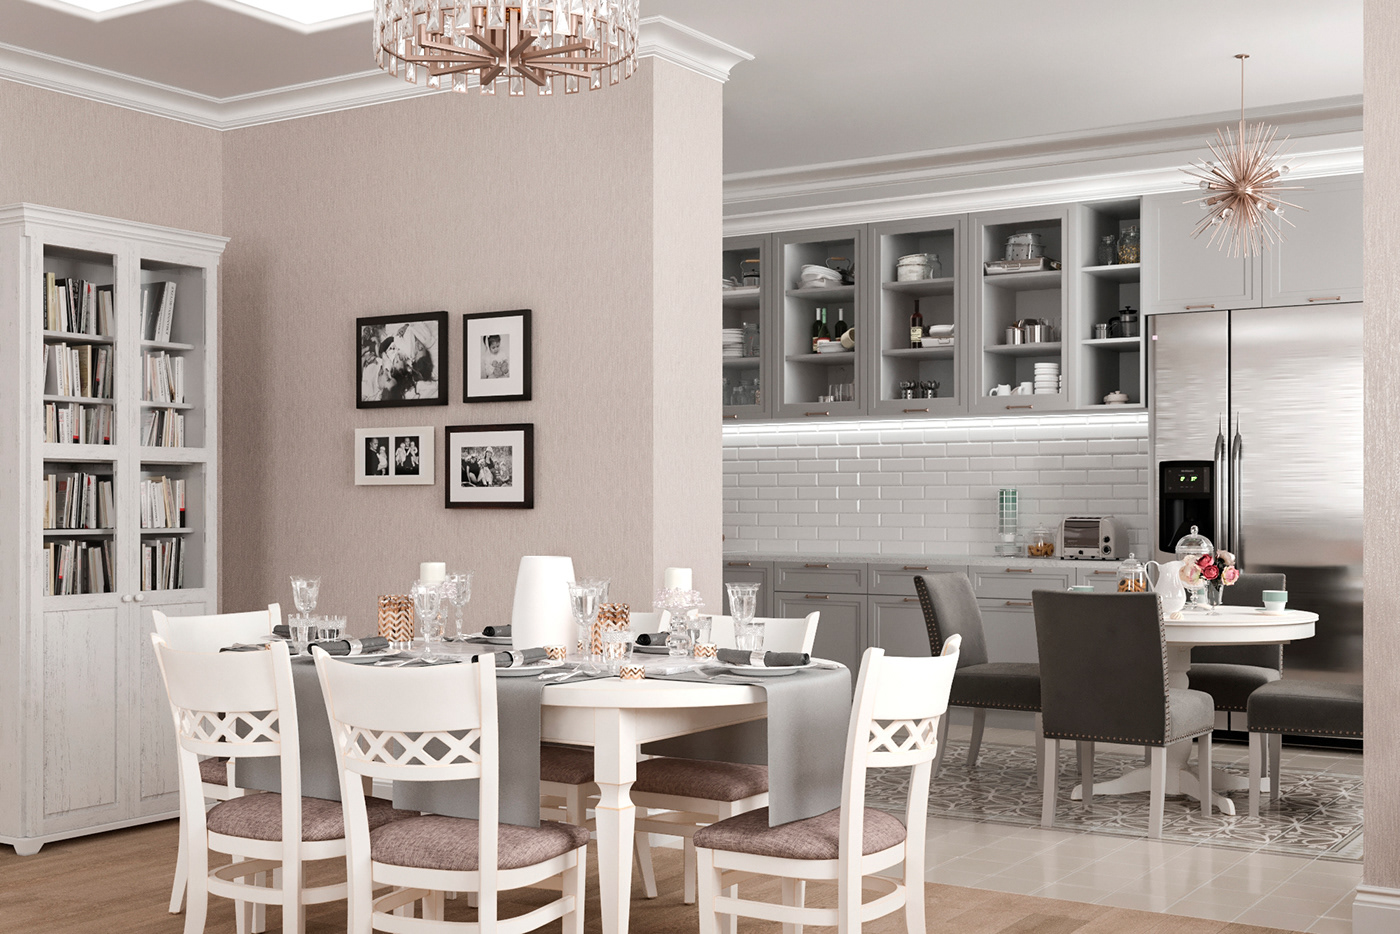 visualization 3ds max corona renderer beige interior kitchen